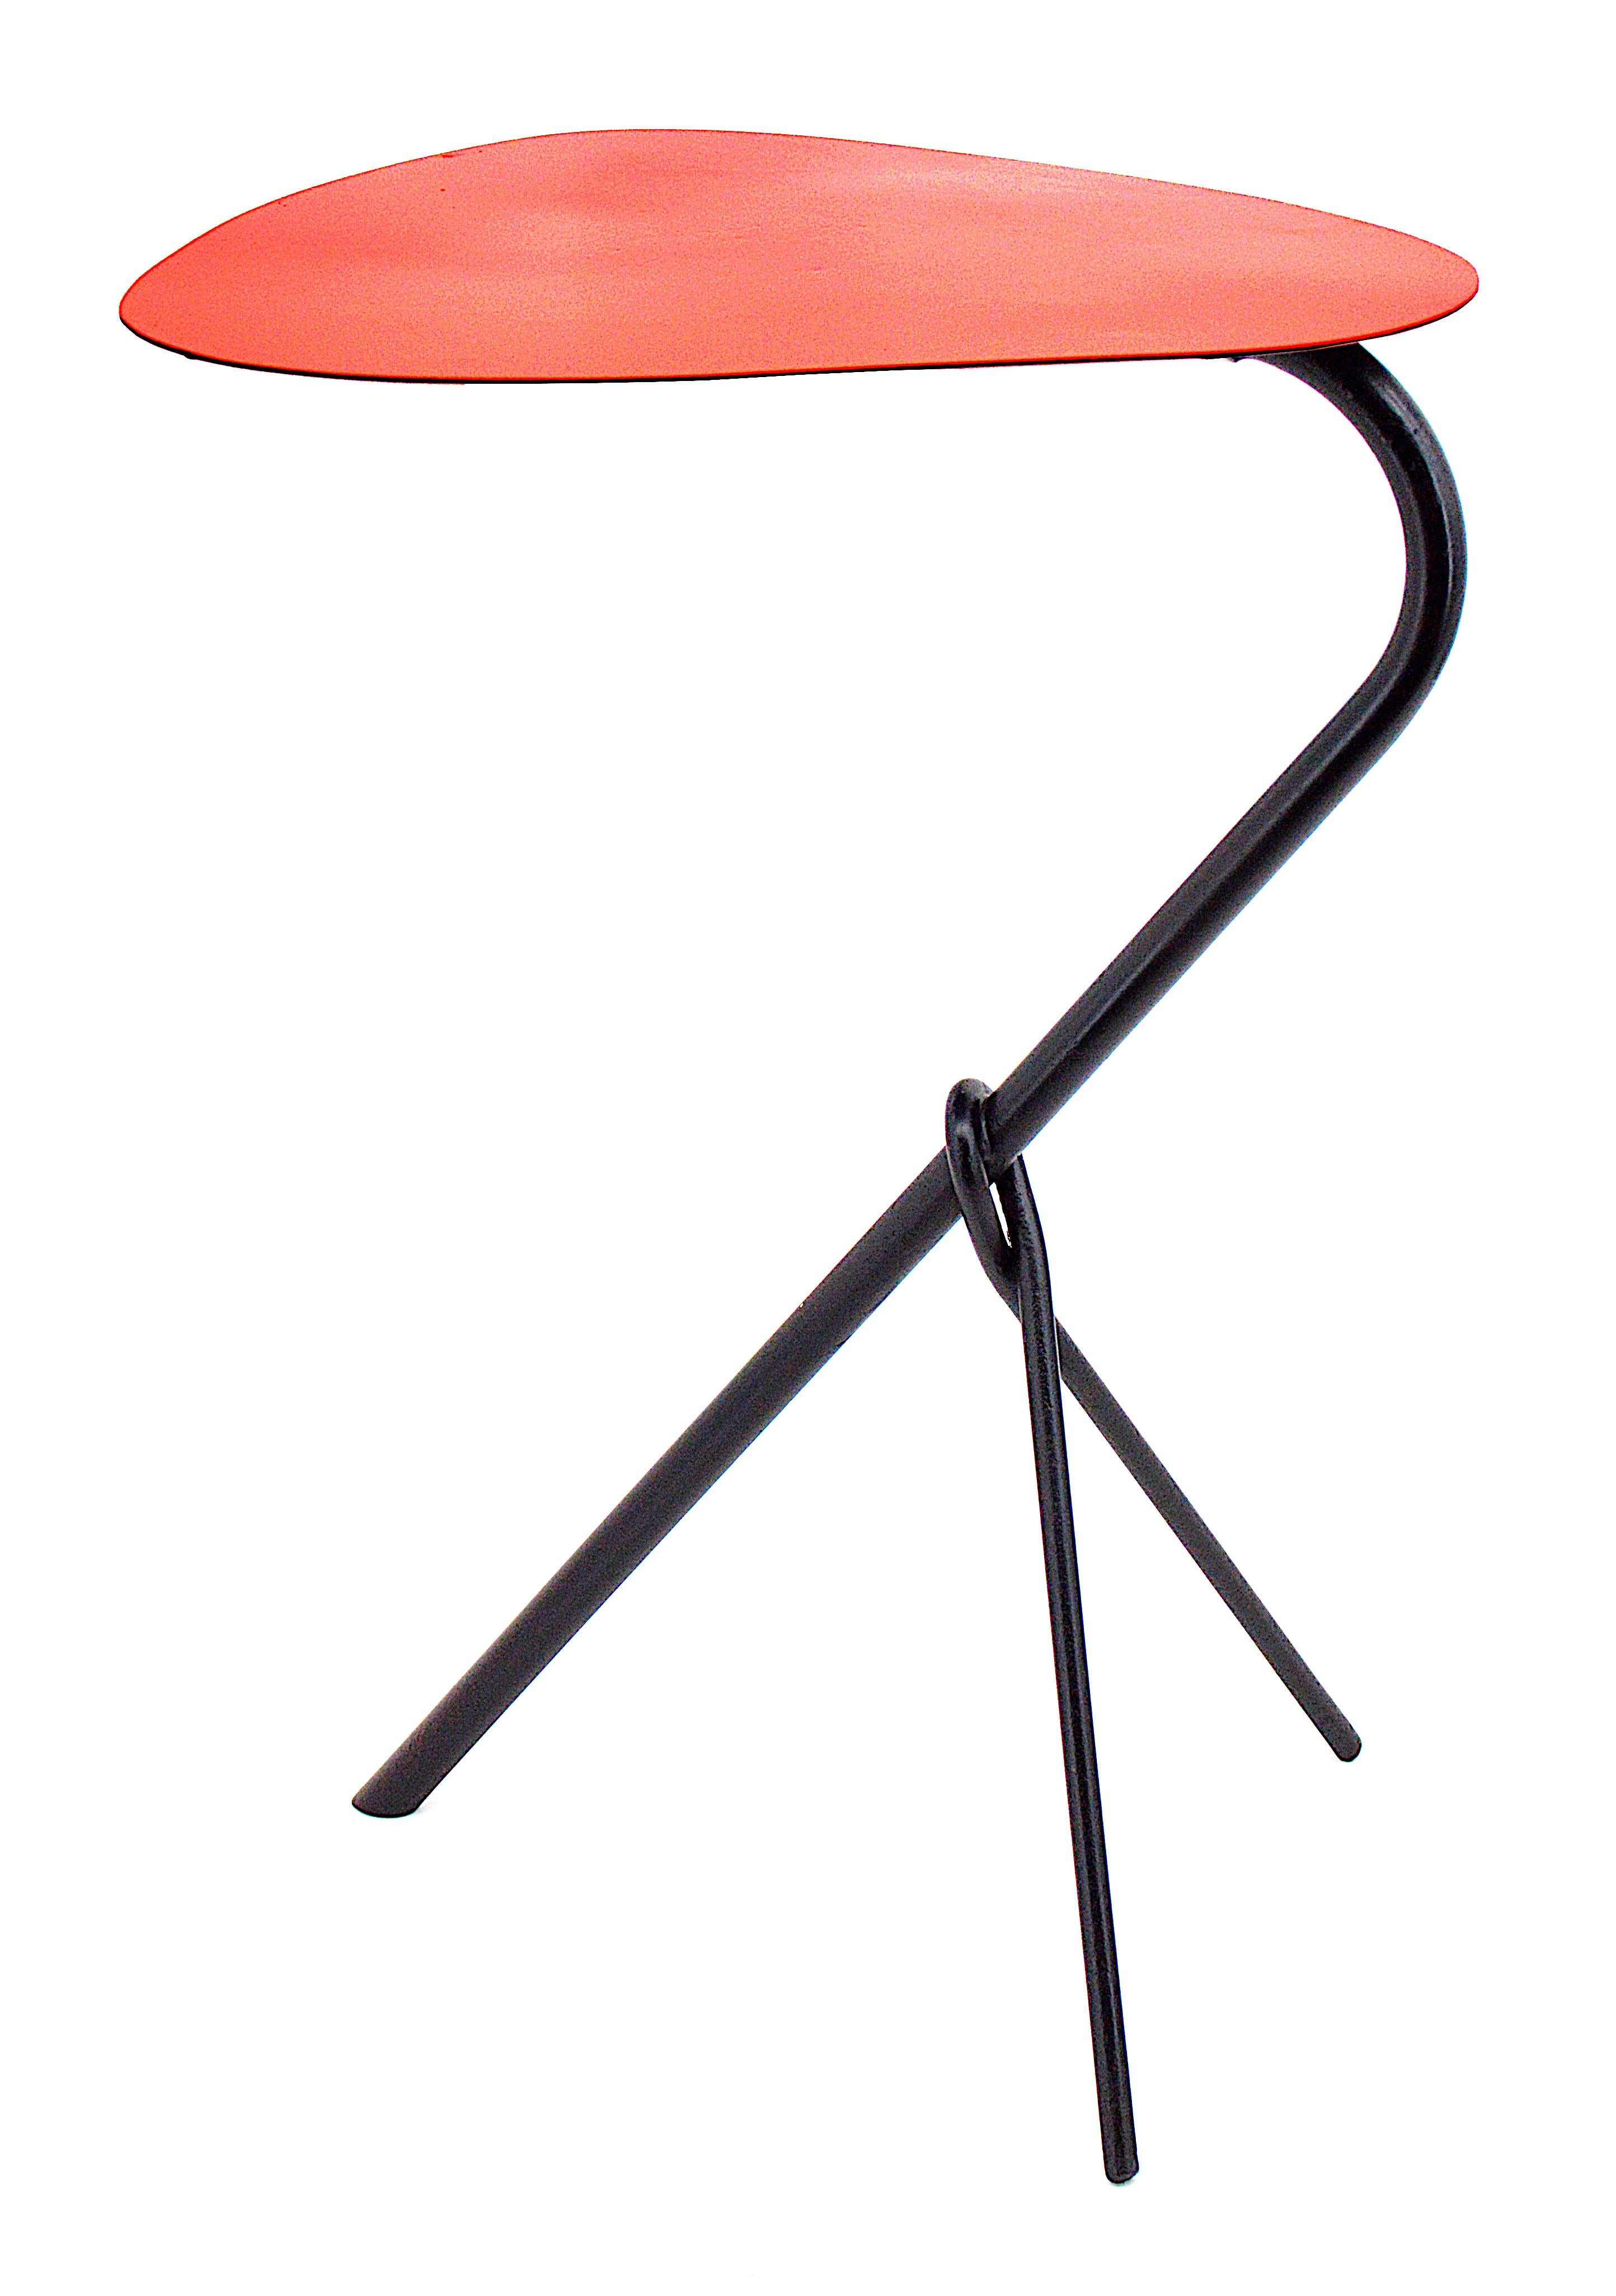 3 tables gigognes du milieu du siècle, France, fin des années 1950. Table rouge - hauteur 53 cm, longueur 36,2 cm, largeur 35,4 cm. Table jaune - hauteur 17.3